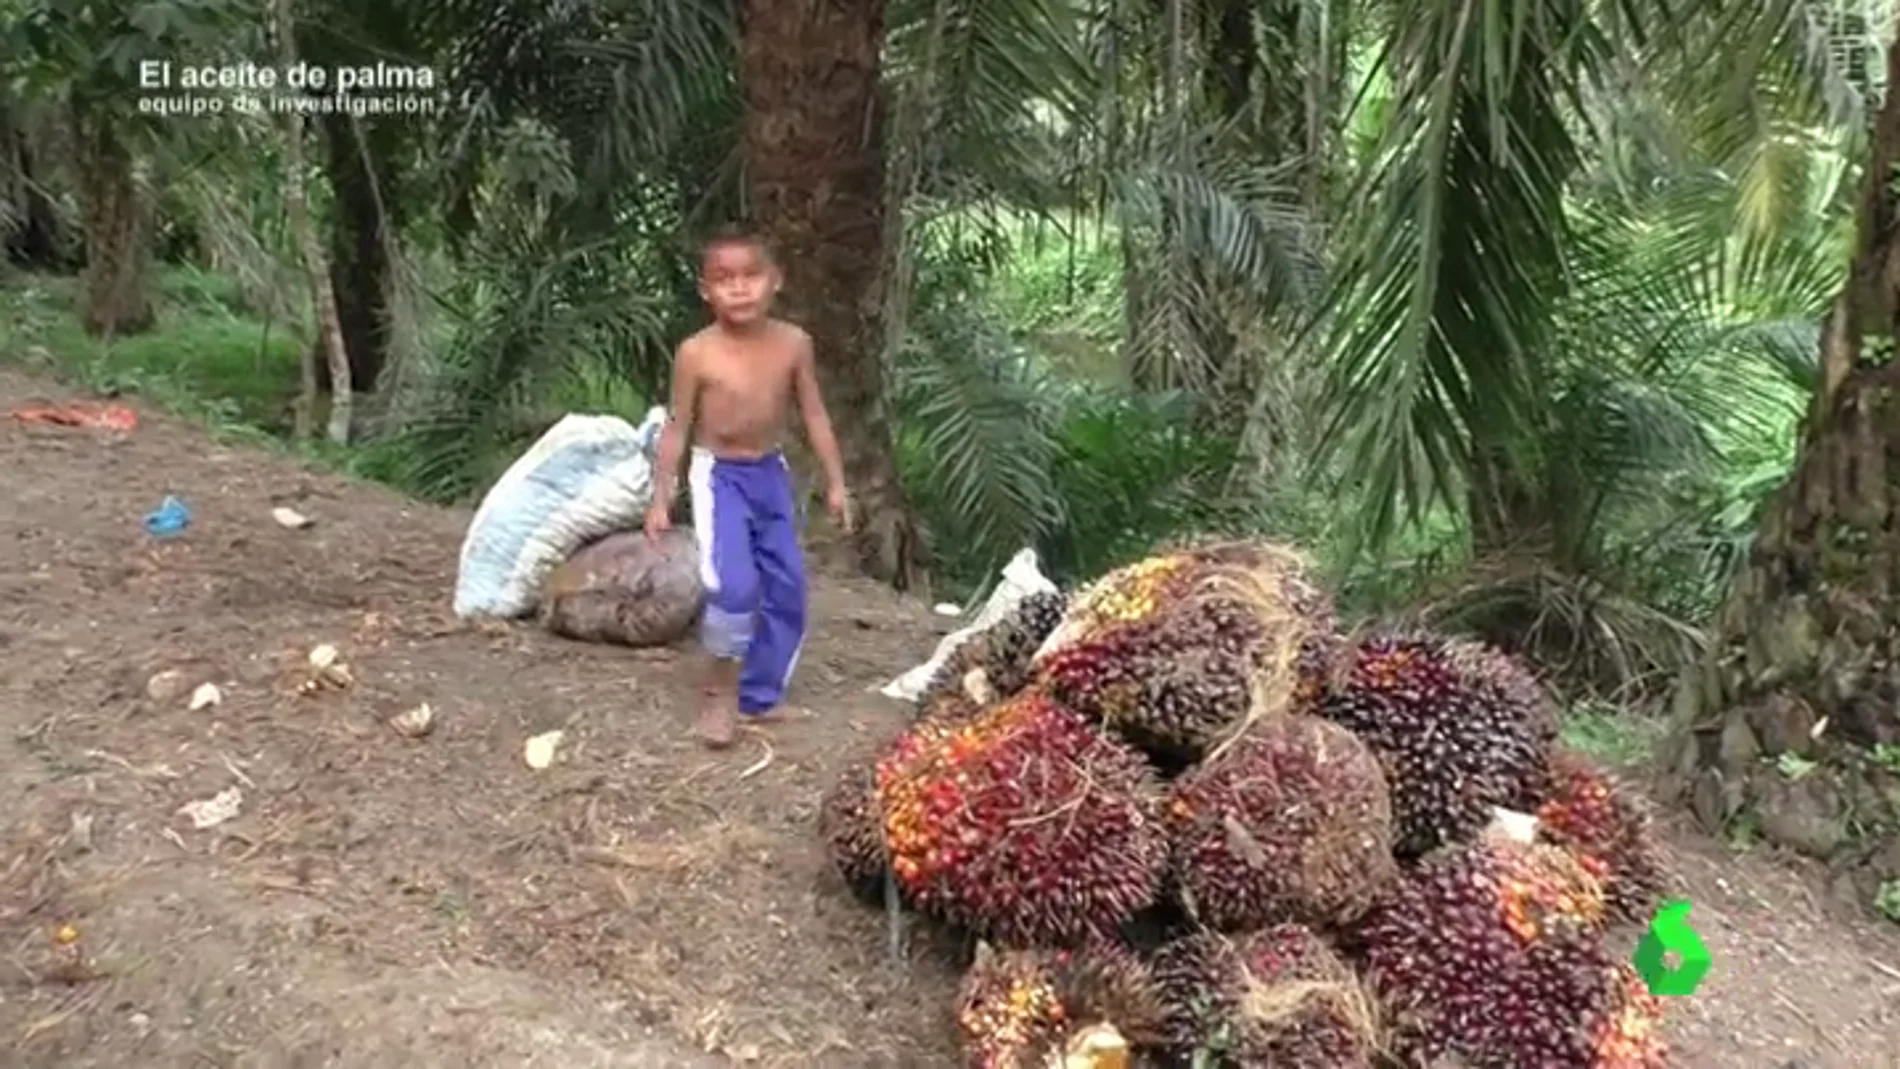 Equipo de Investigación logra grabar cómo se explota a niños en las plantaciones de aceite de palma de Indonesia